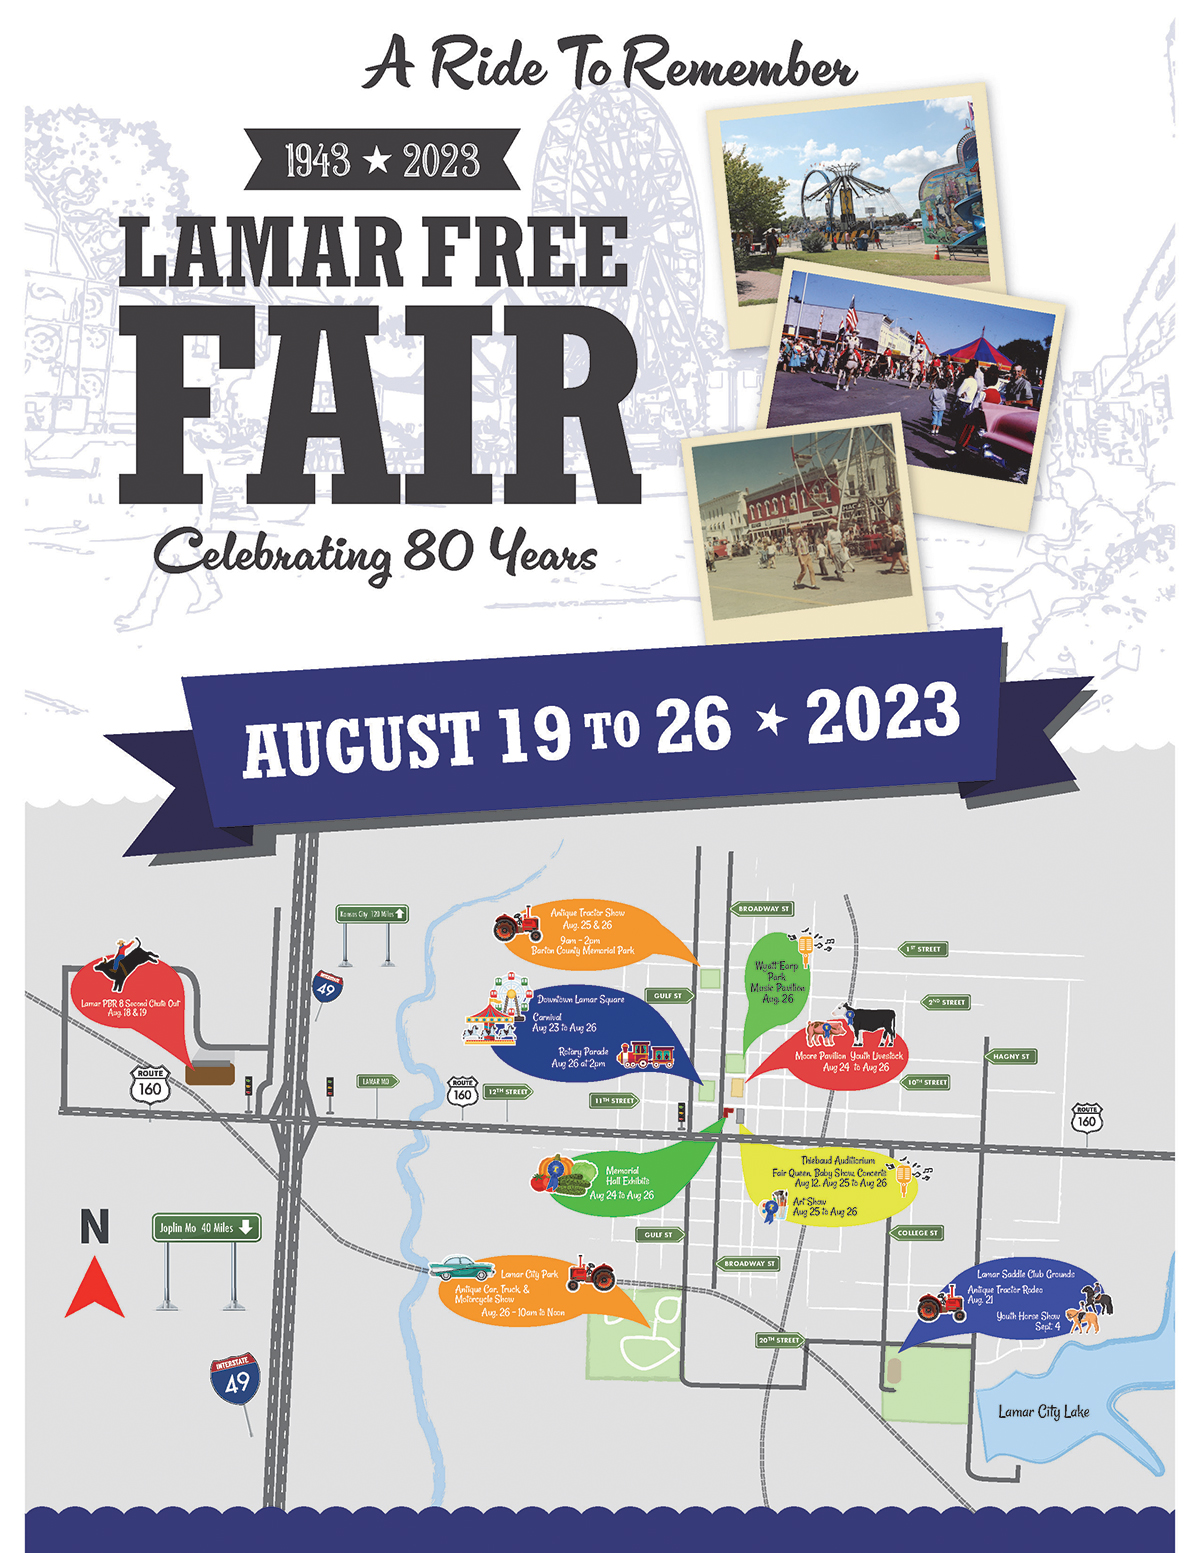 Lamar Free Fair Aug 18 to Aug 26